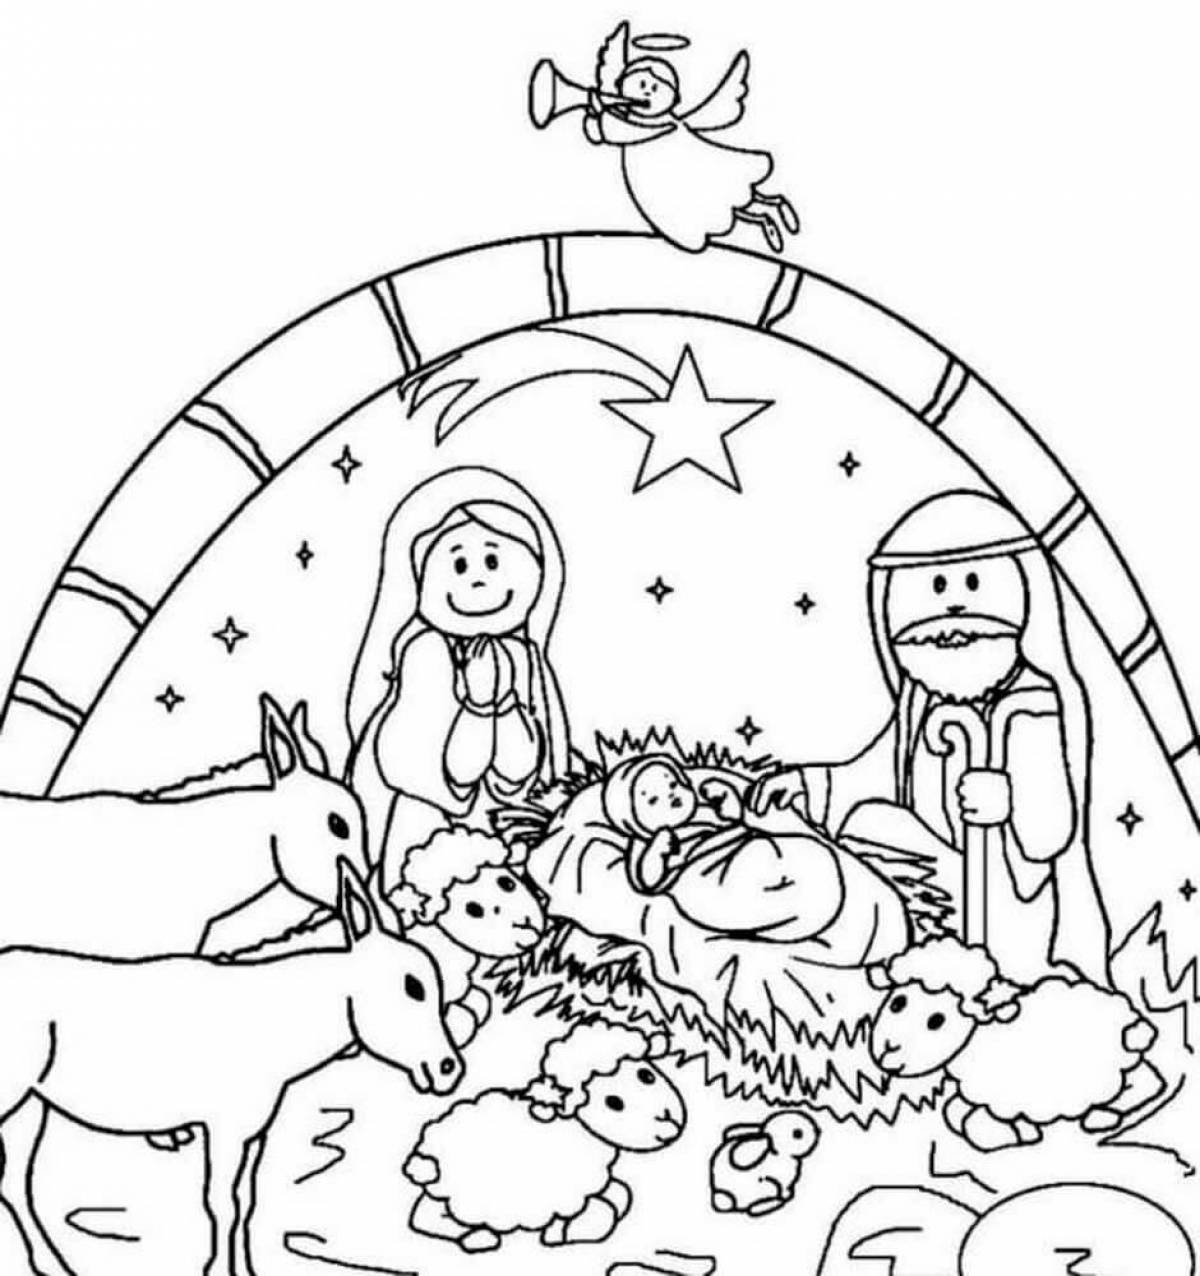 Fabulous Christmas drawing